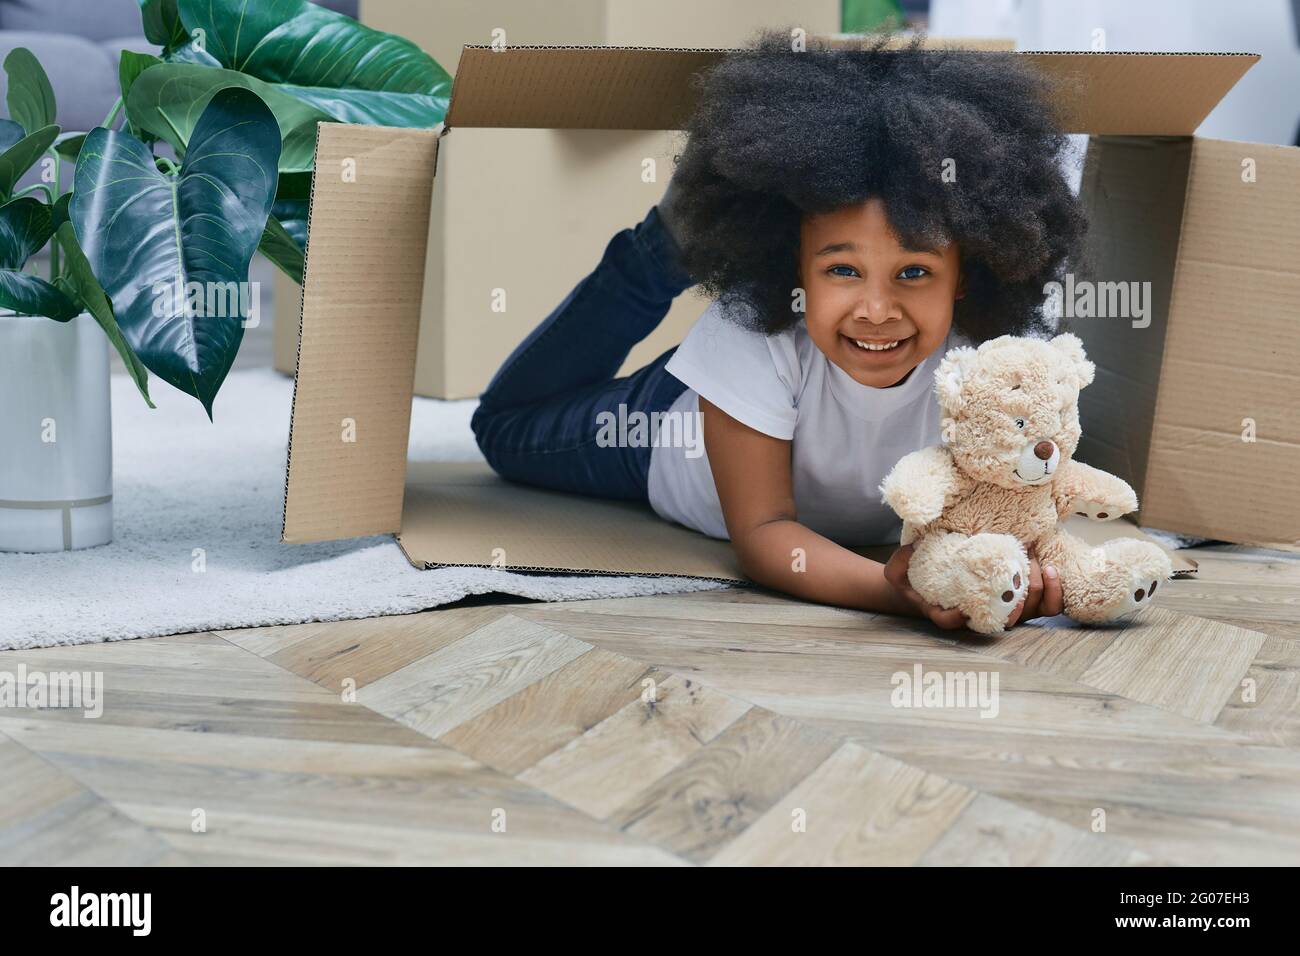 Glückliches afroamerikanisches kleines Mädchen, das mit Pappkartons und ihrem Plüschbären spielt und Spaß hat, während es nach Hause zieht Stockfoto